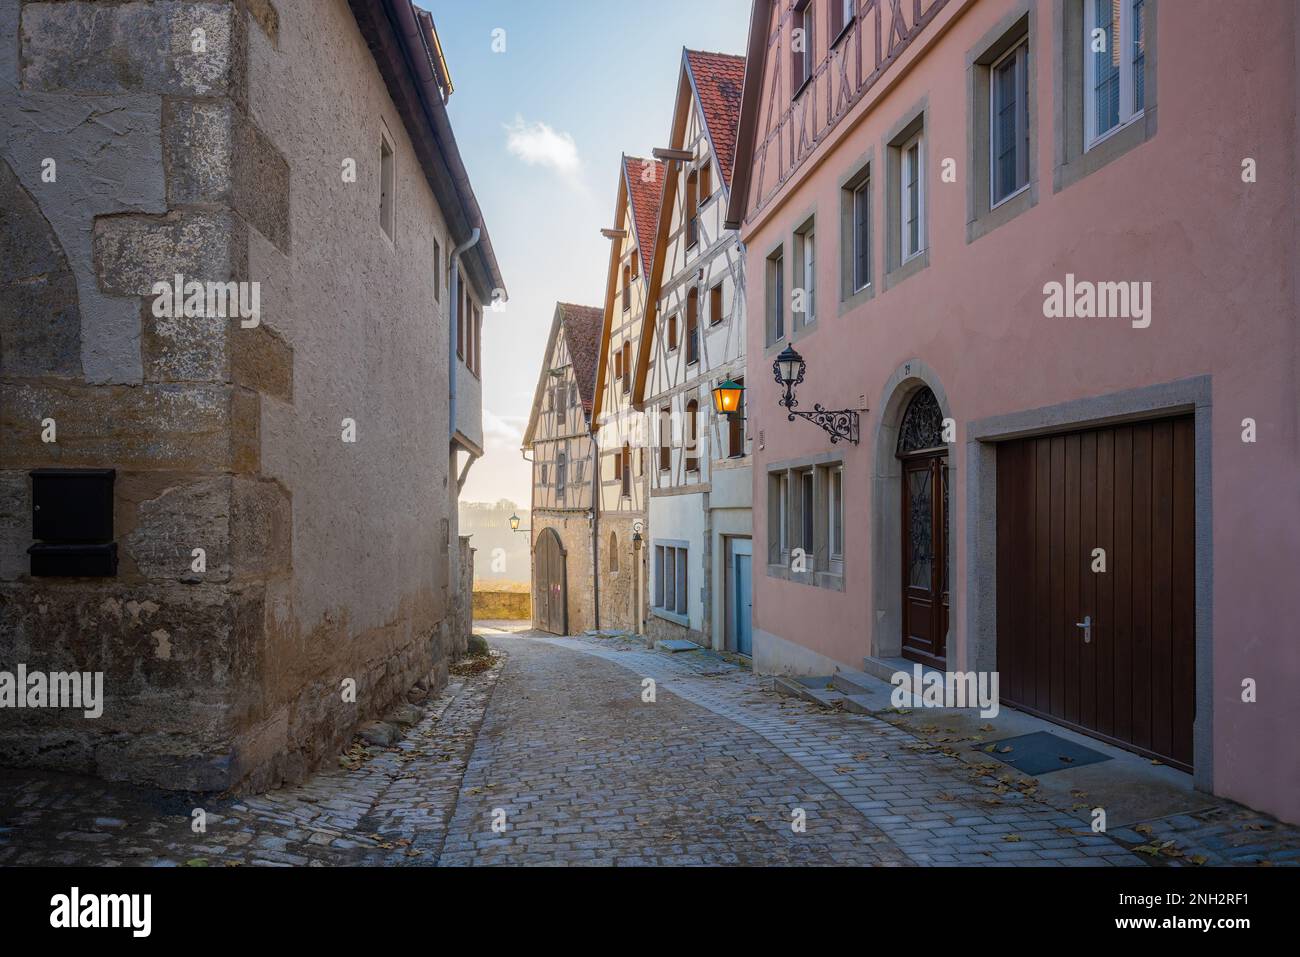 Fachwerkhäuser in der Burgasse - Rothenburg ob der Tauber, Bayern, Deutschland Stockfoto